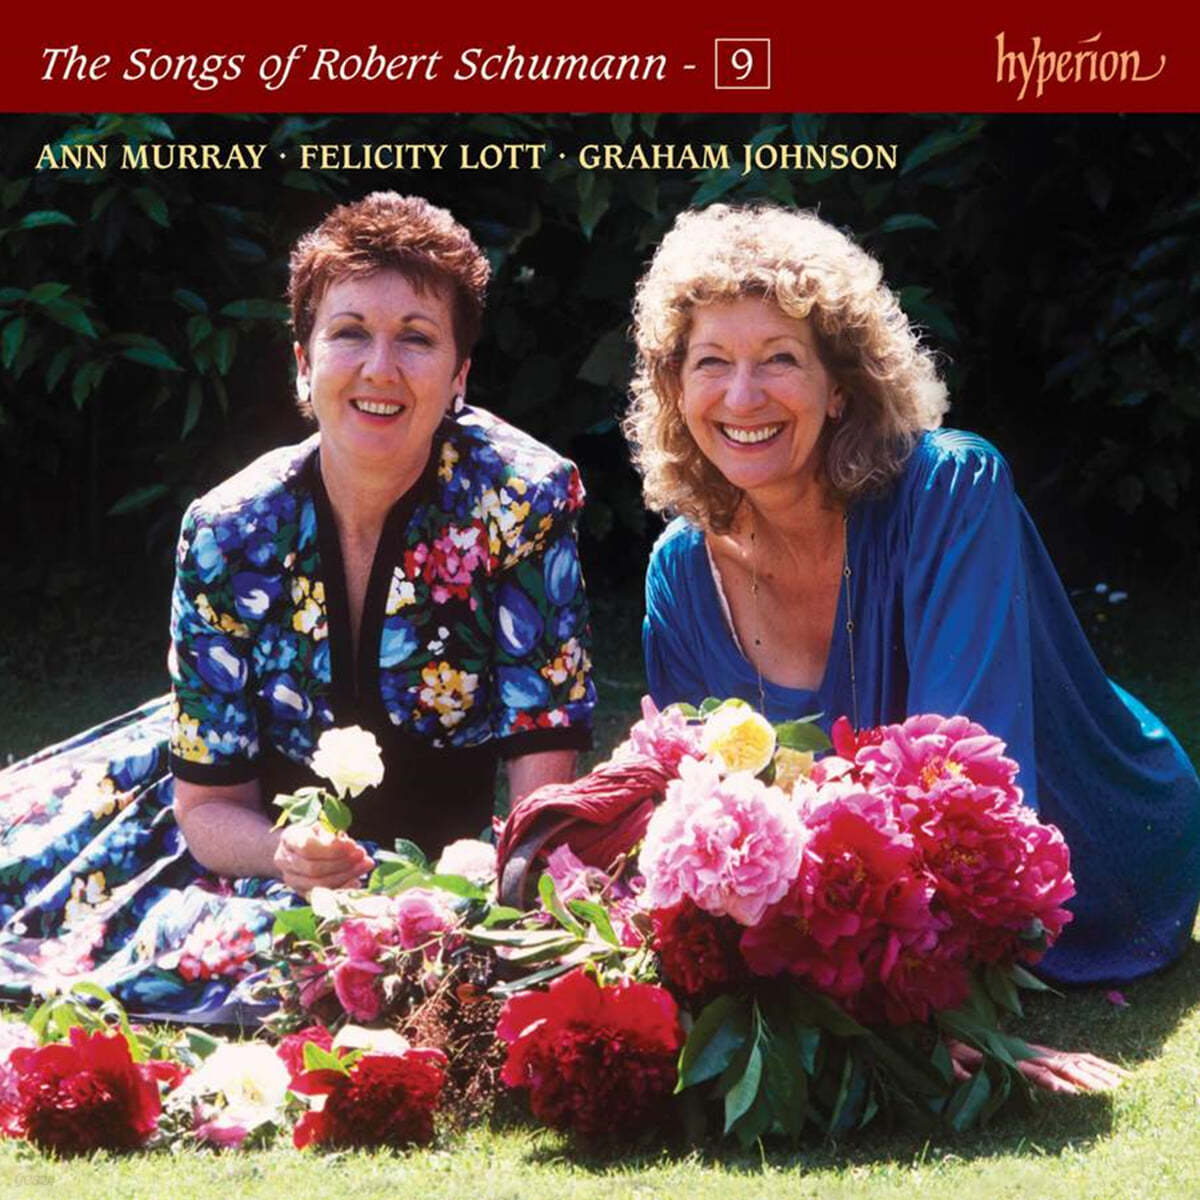 Felicity Lott / Ann Murray  슈만: 가곡 9권 (The Songs of Robert Schumann - Vol. 9)